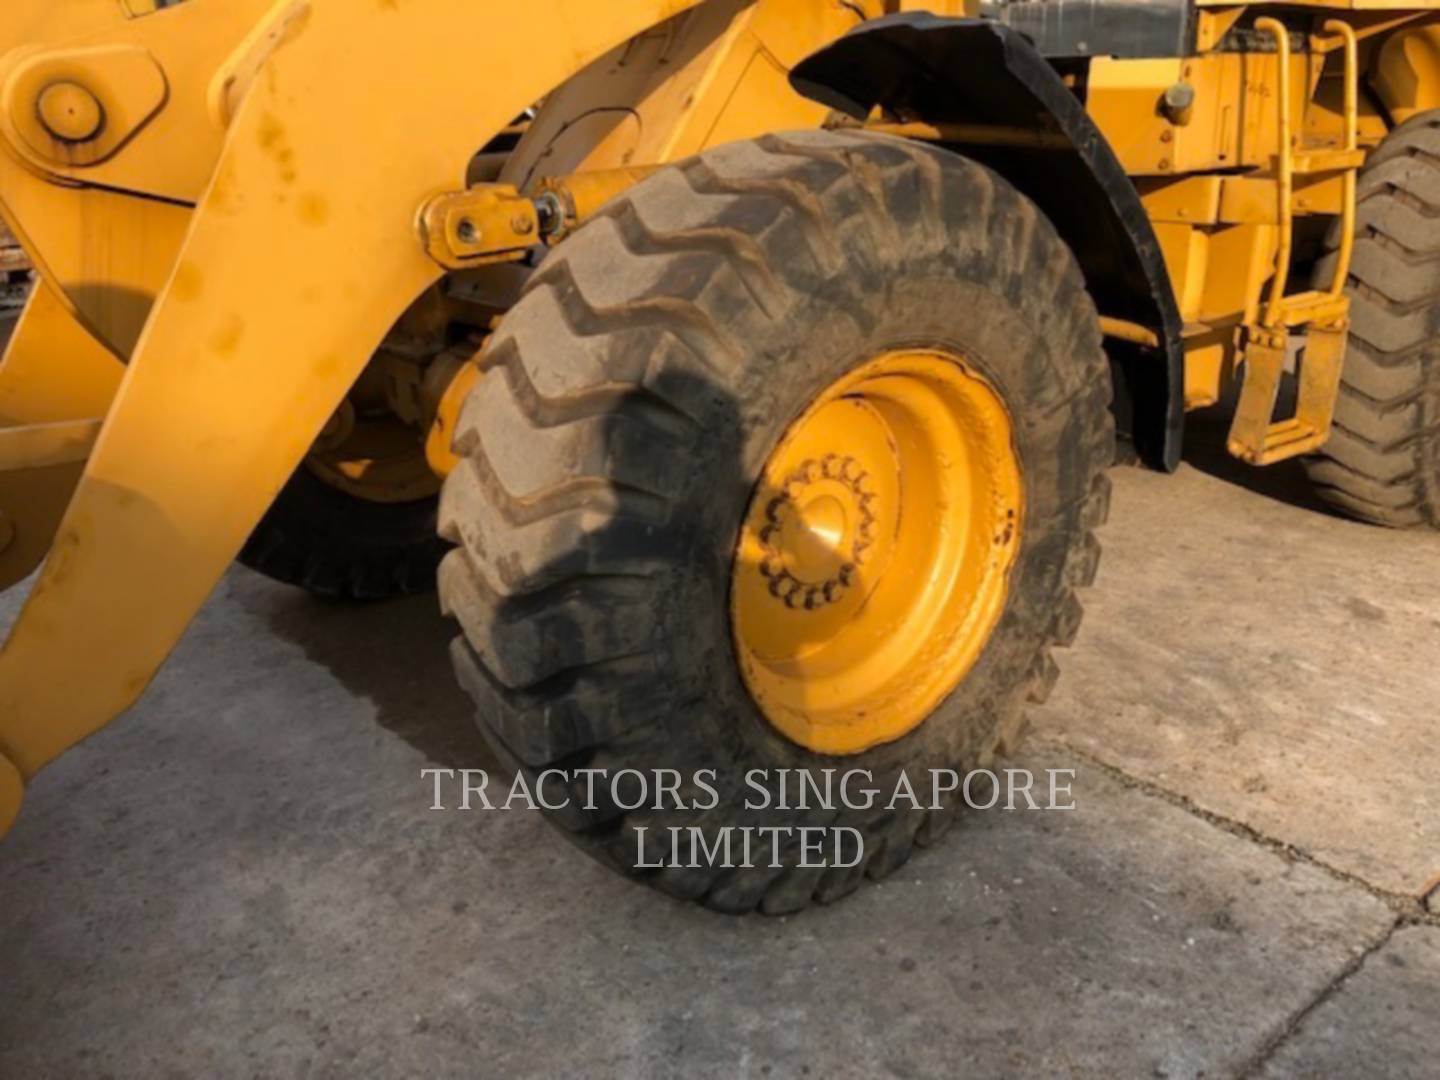 wtk?JHNyYz1mYmMwOTkxNDFhMDBmYmI2OGI0ZjlhYzYzNmYwMTY1MCYkdHh0PVRSQUNUT1JTJTIwU0lOR0FQT1JFJTIwTElNSVRFRCY0NjI0MA== 924GZ | Tractors Singapore